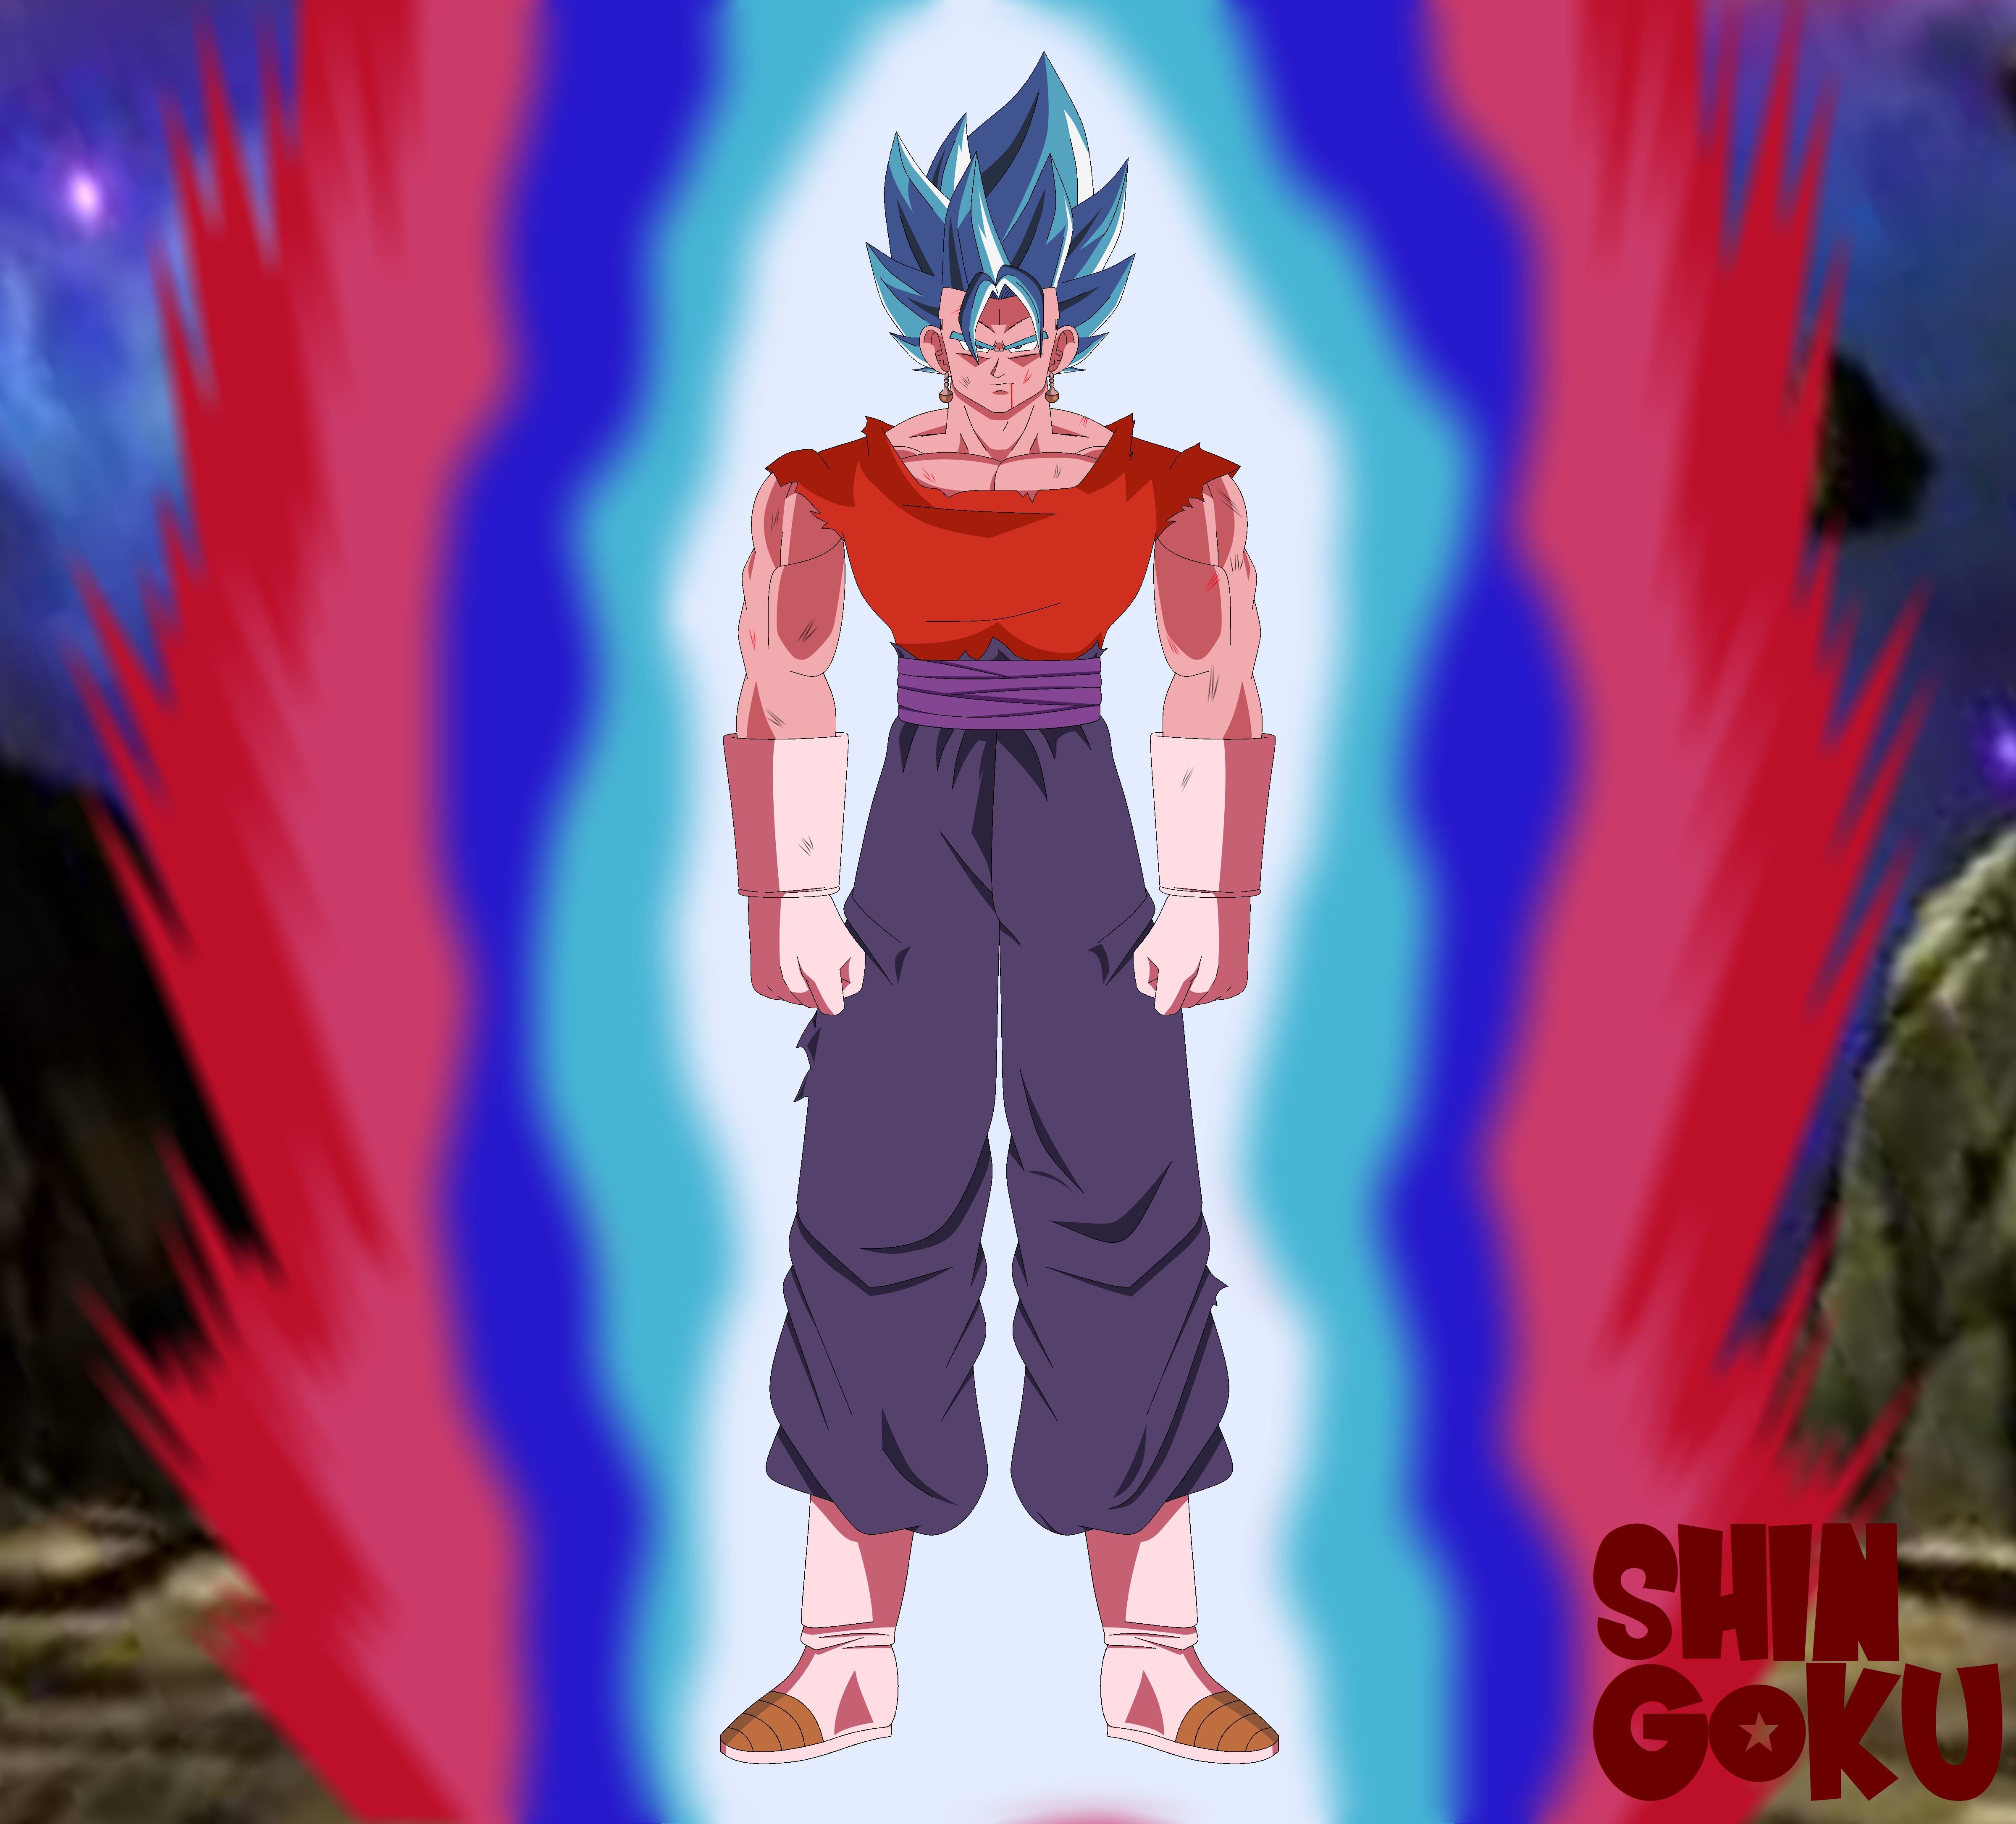 Goku Super Saiyan Blue 3 vs Vegeta Super Saiyan Blue Evolution 